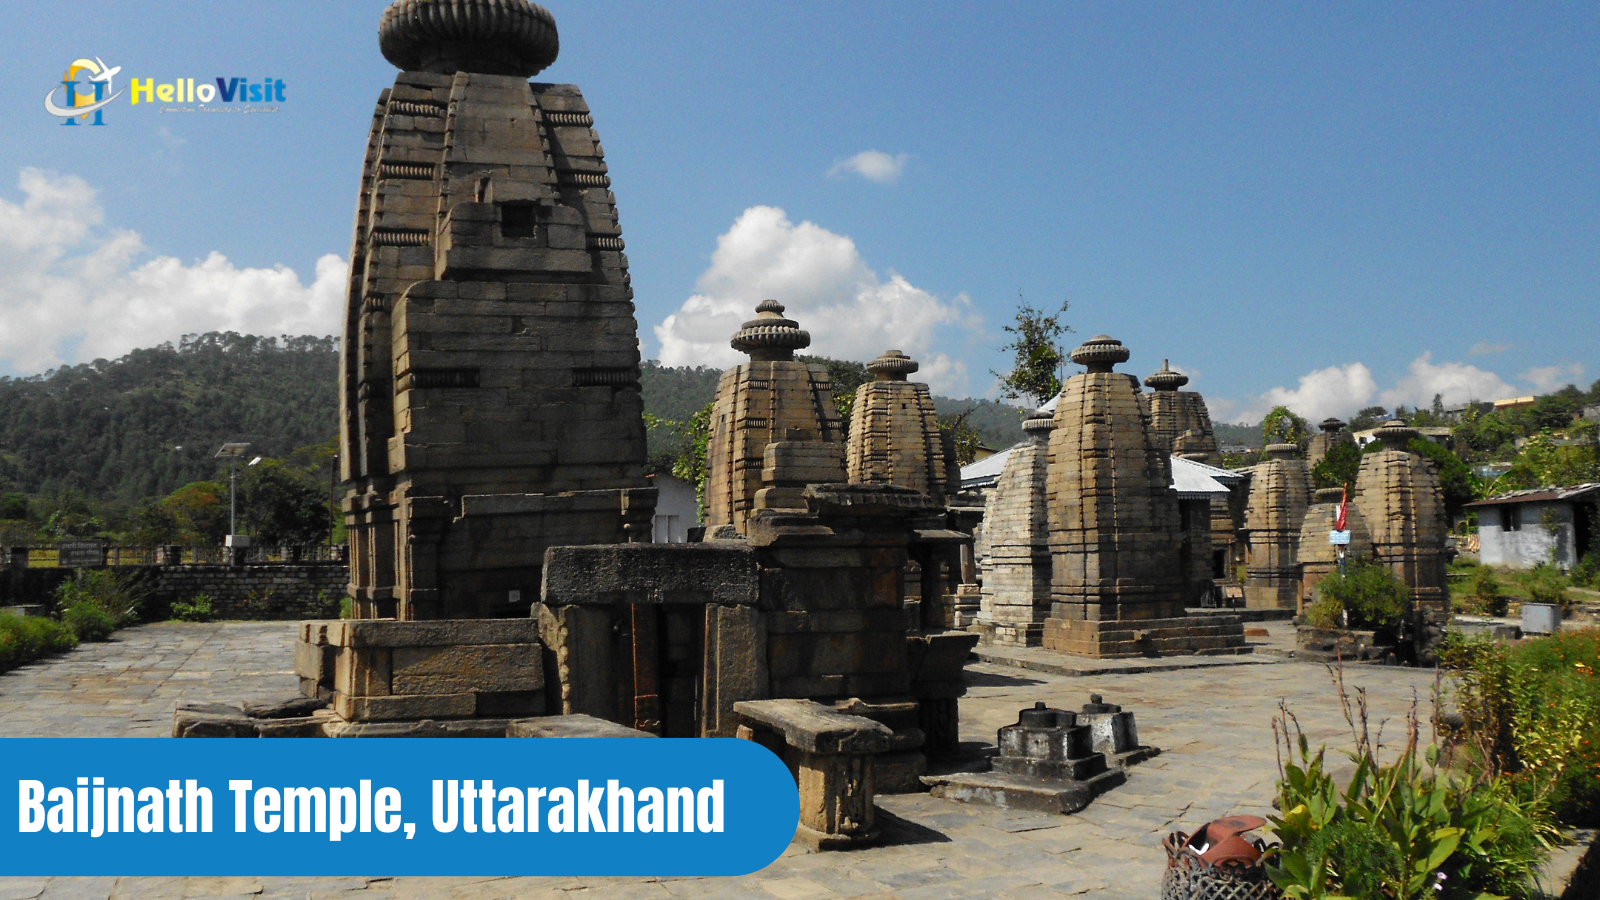 Baijnath Temple, Uttarakhand